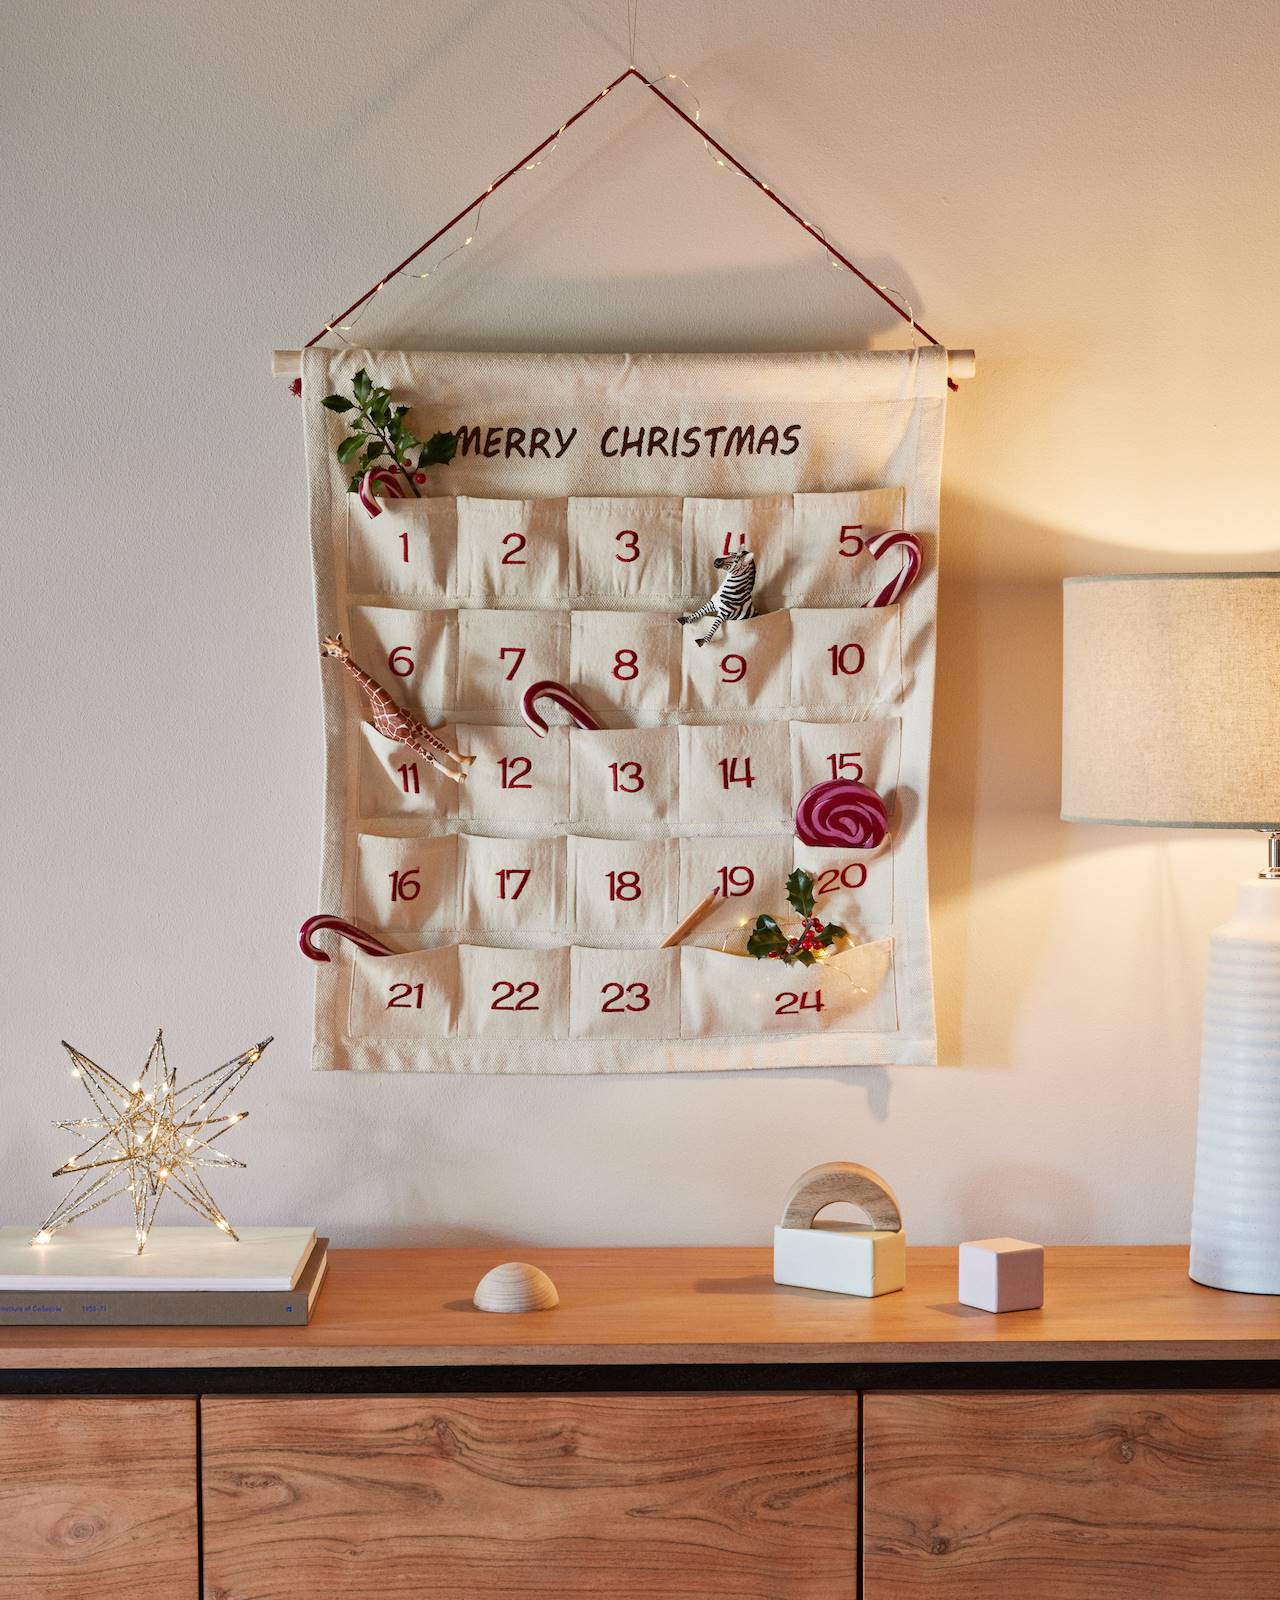 Calendario de adviento de la colección de Navidad 2022-2023 de Kave Home.